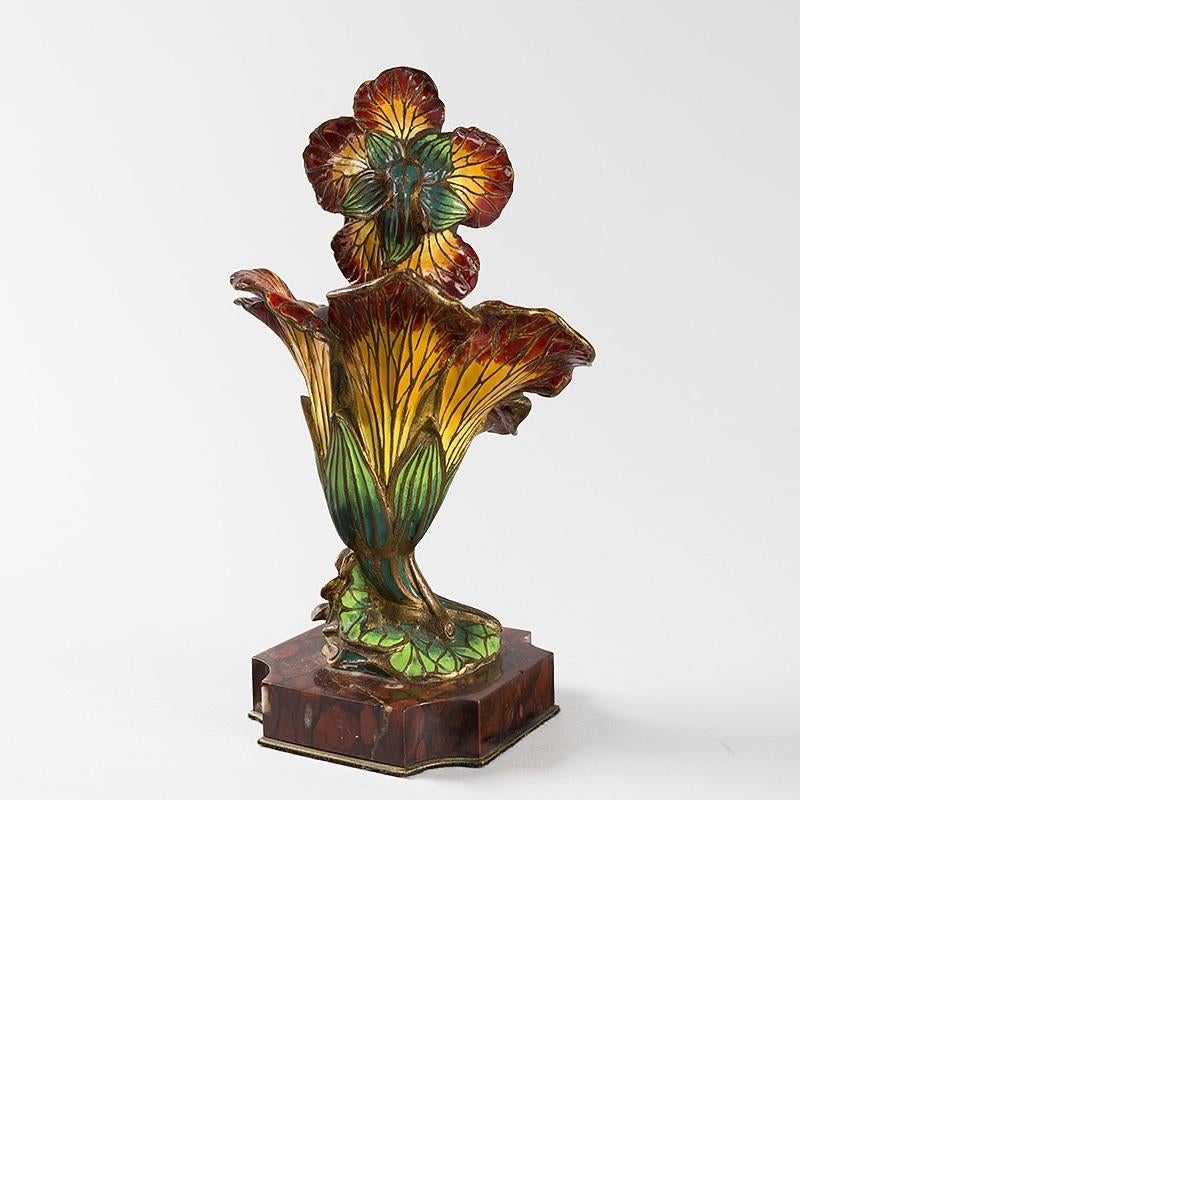 Une Femme Fleur en bronze émaillé de l'Art Nouveau français par Henri Godet (1863-1937).  La sculpture représente la tête et le cou en bronze patiné d'une jeune femme qui sort d'une fleur de lys émaillée rouge et jaune. Elle repose sur un socle en